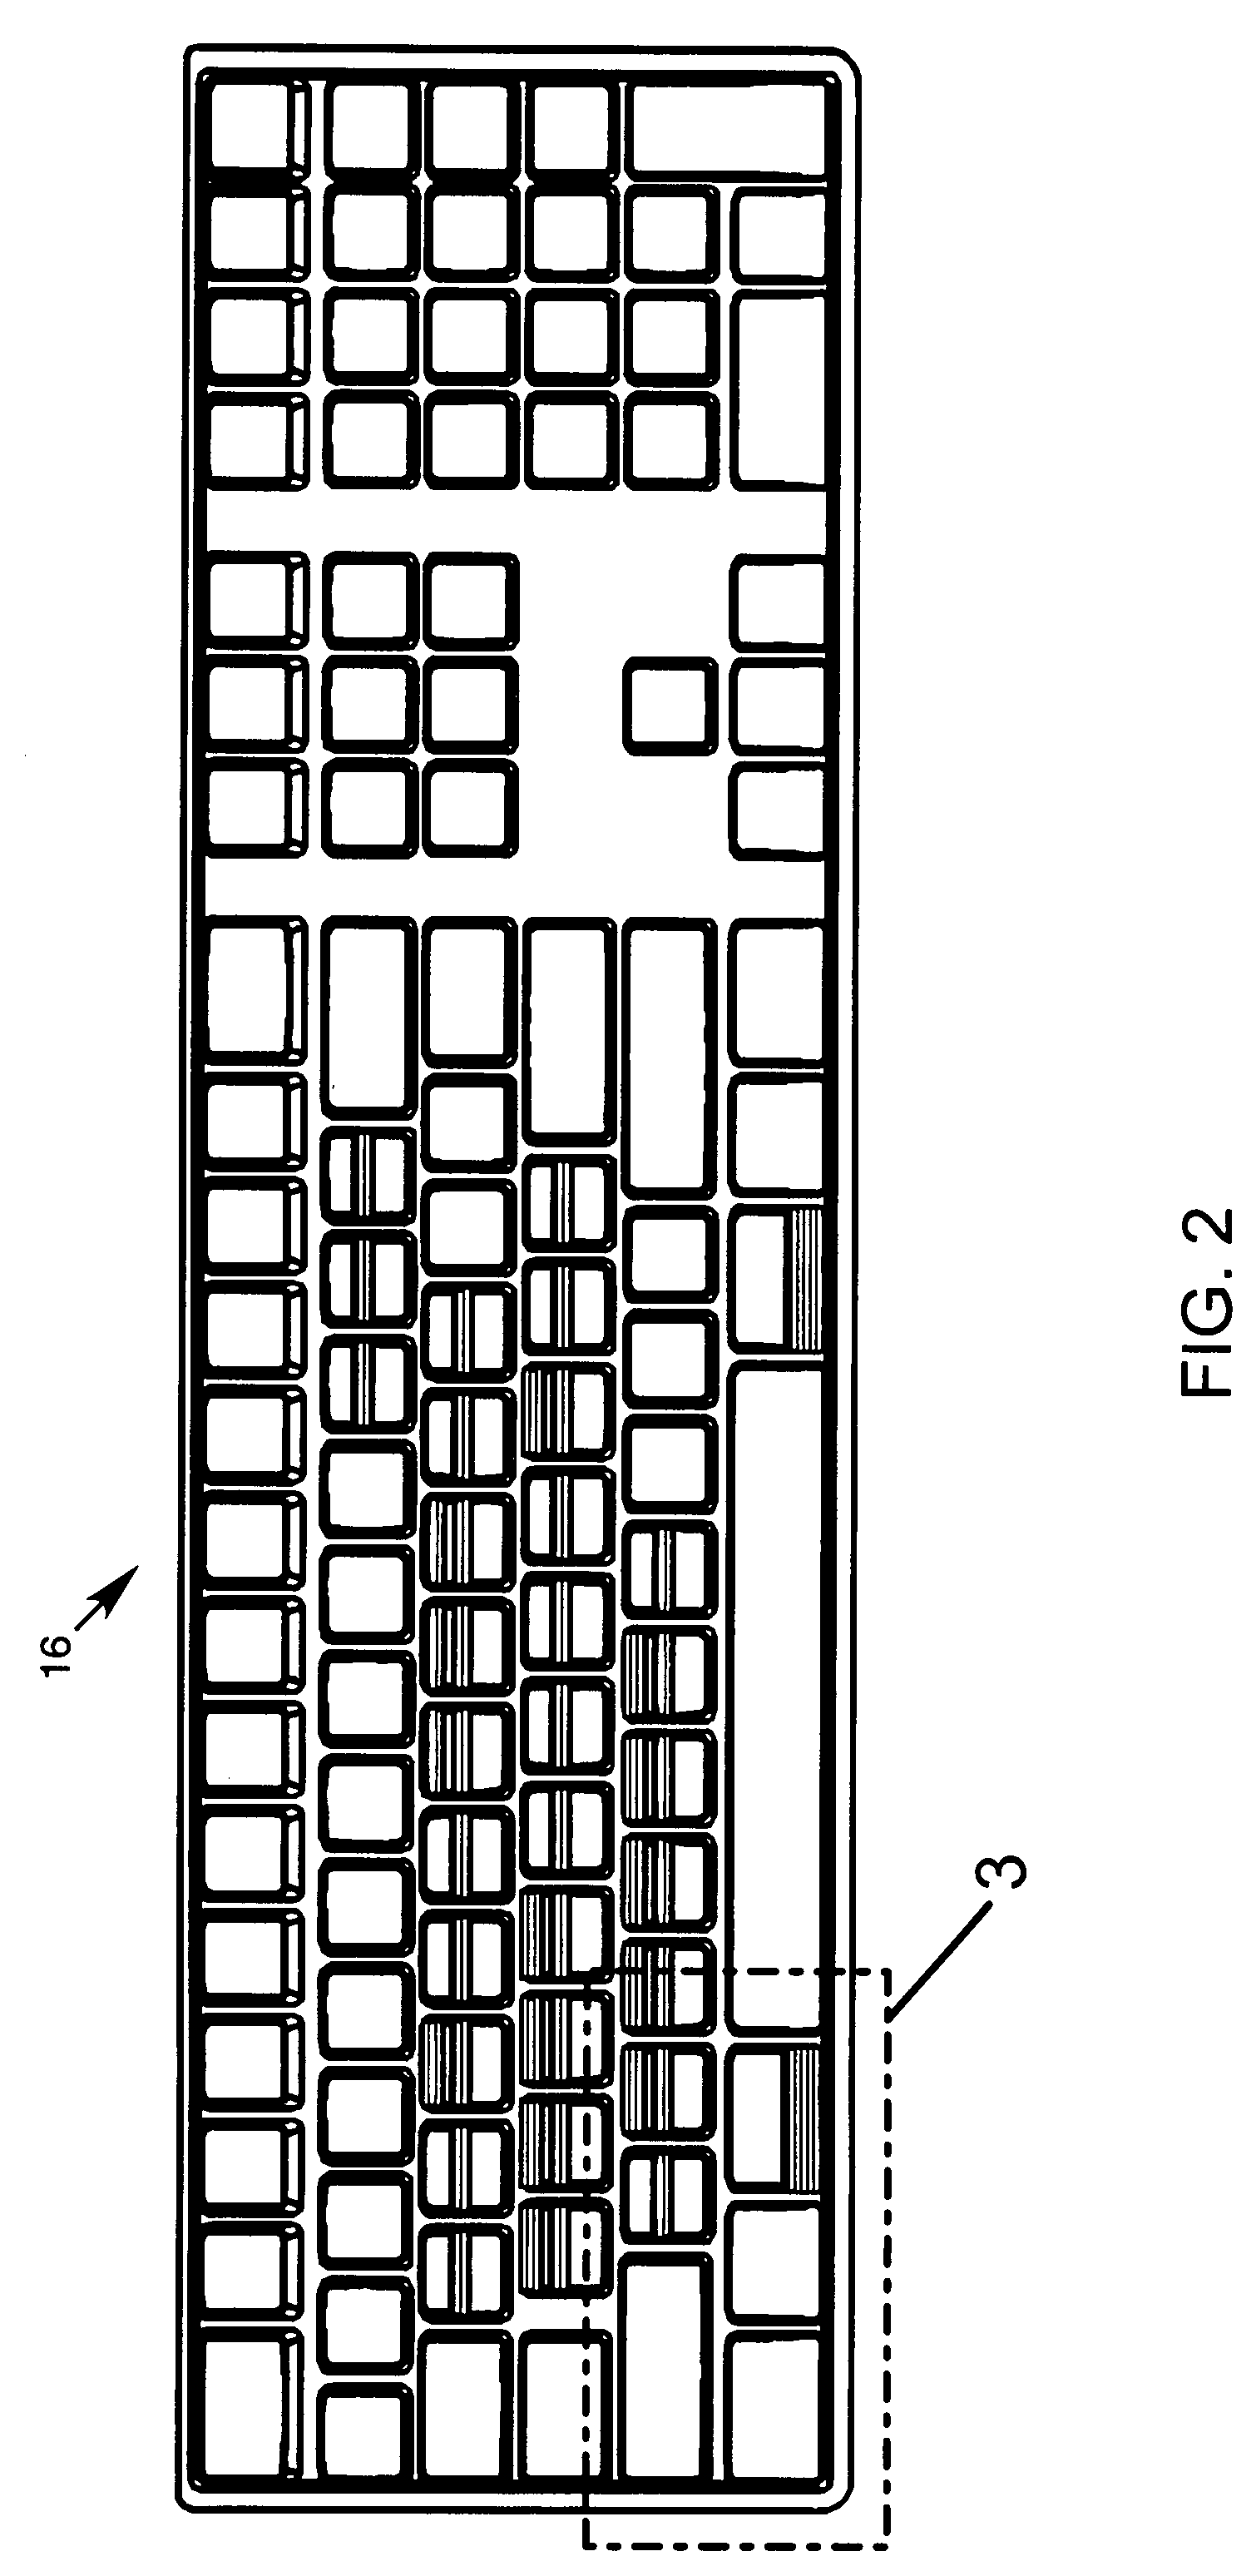 Computer keyboard overlay